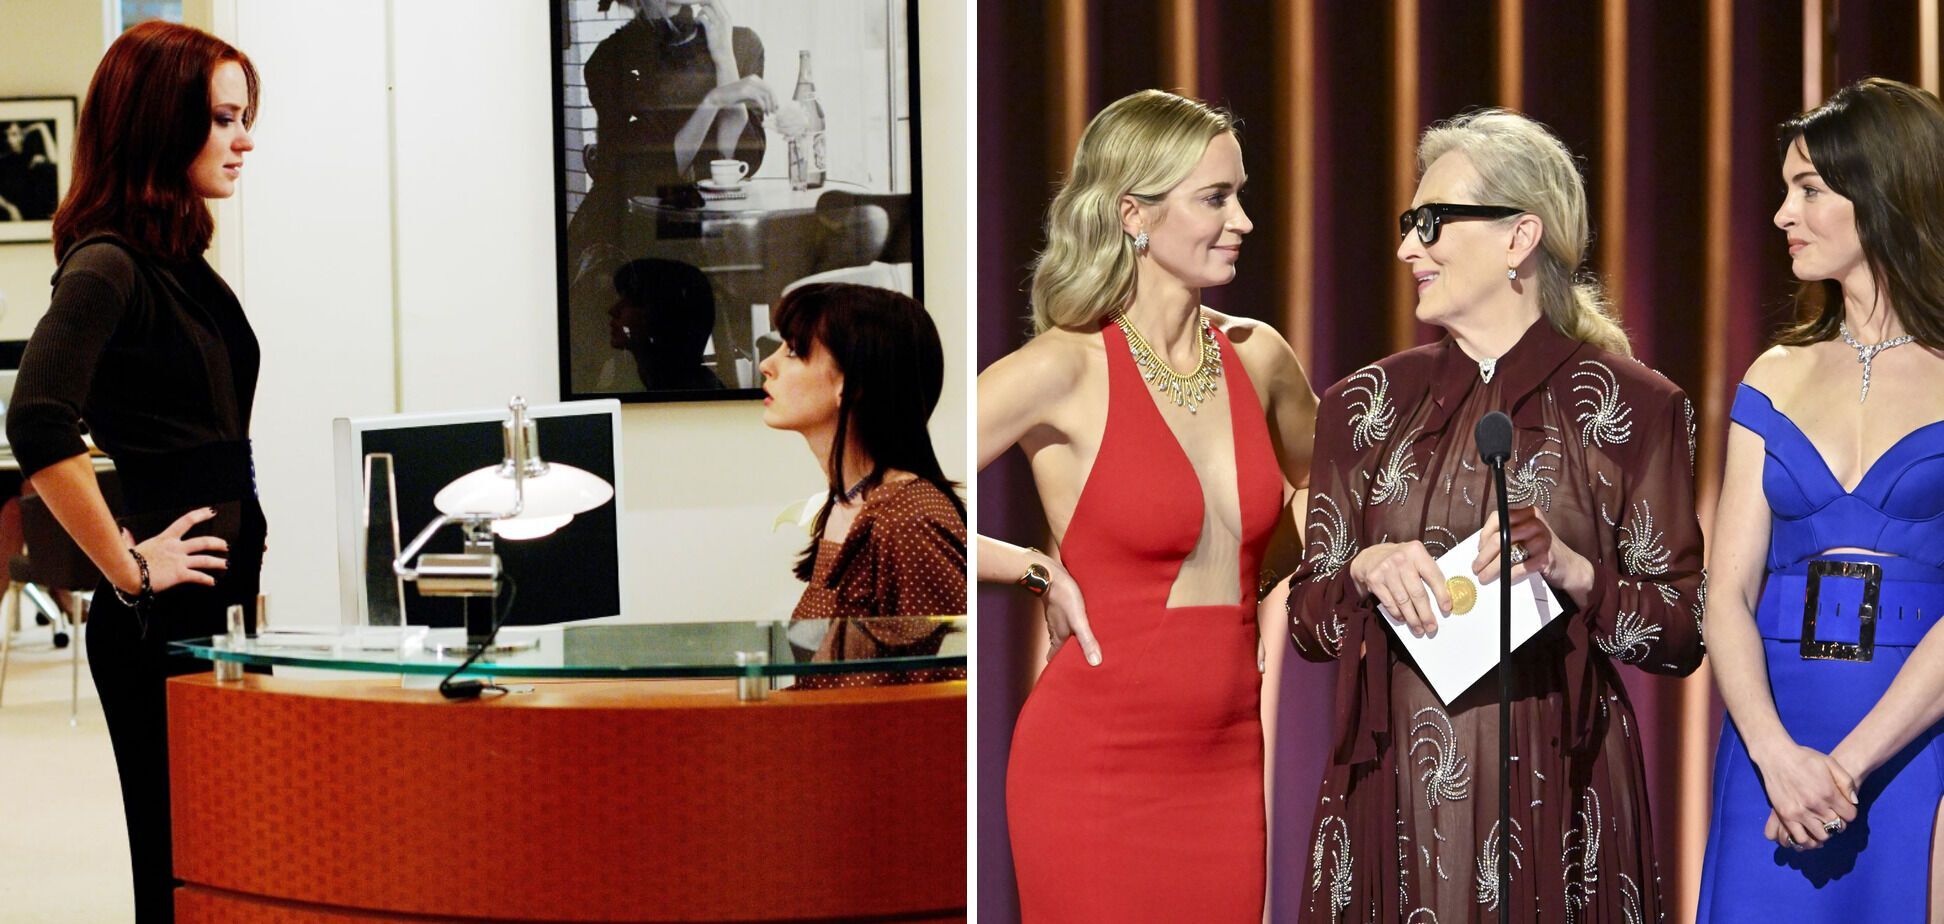 Gwiazdy ''Diabeł ubiera się u Prady'' Anne Hathaway, Meryl Streep i Emily Blunt ponownie spotkały się 18 lat po premierze filmu i wzruszyły fanów do łez.